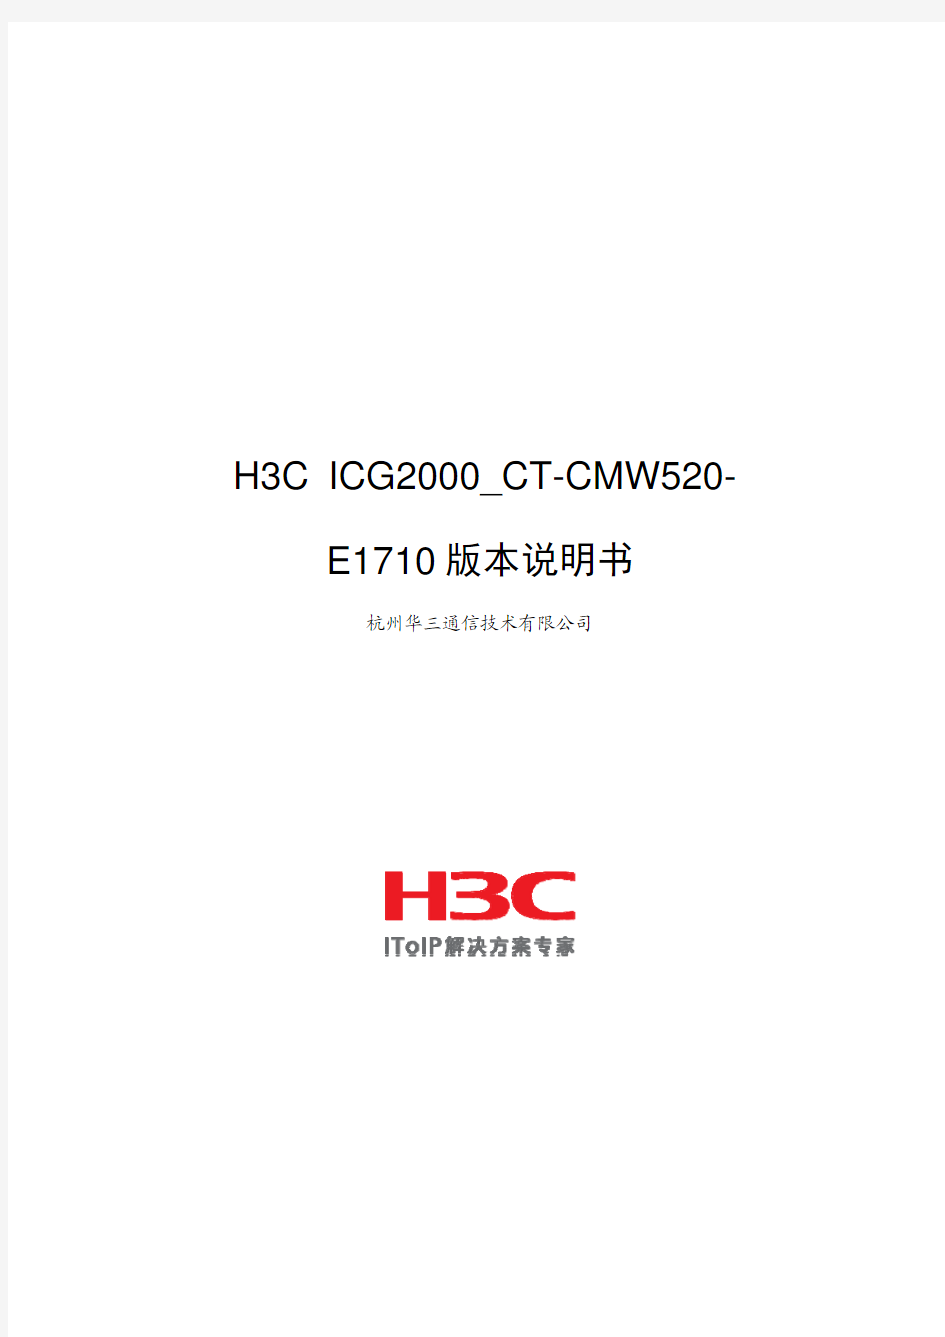 H3C ICG2000_CT-CMW520-E1710 版本说明书